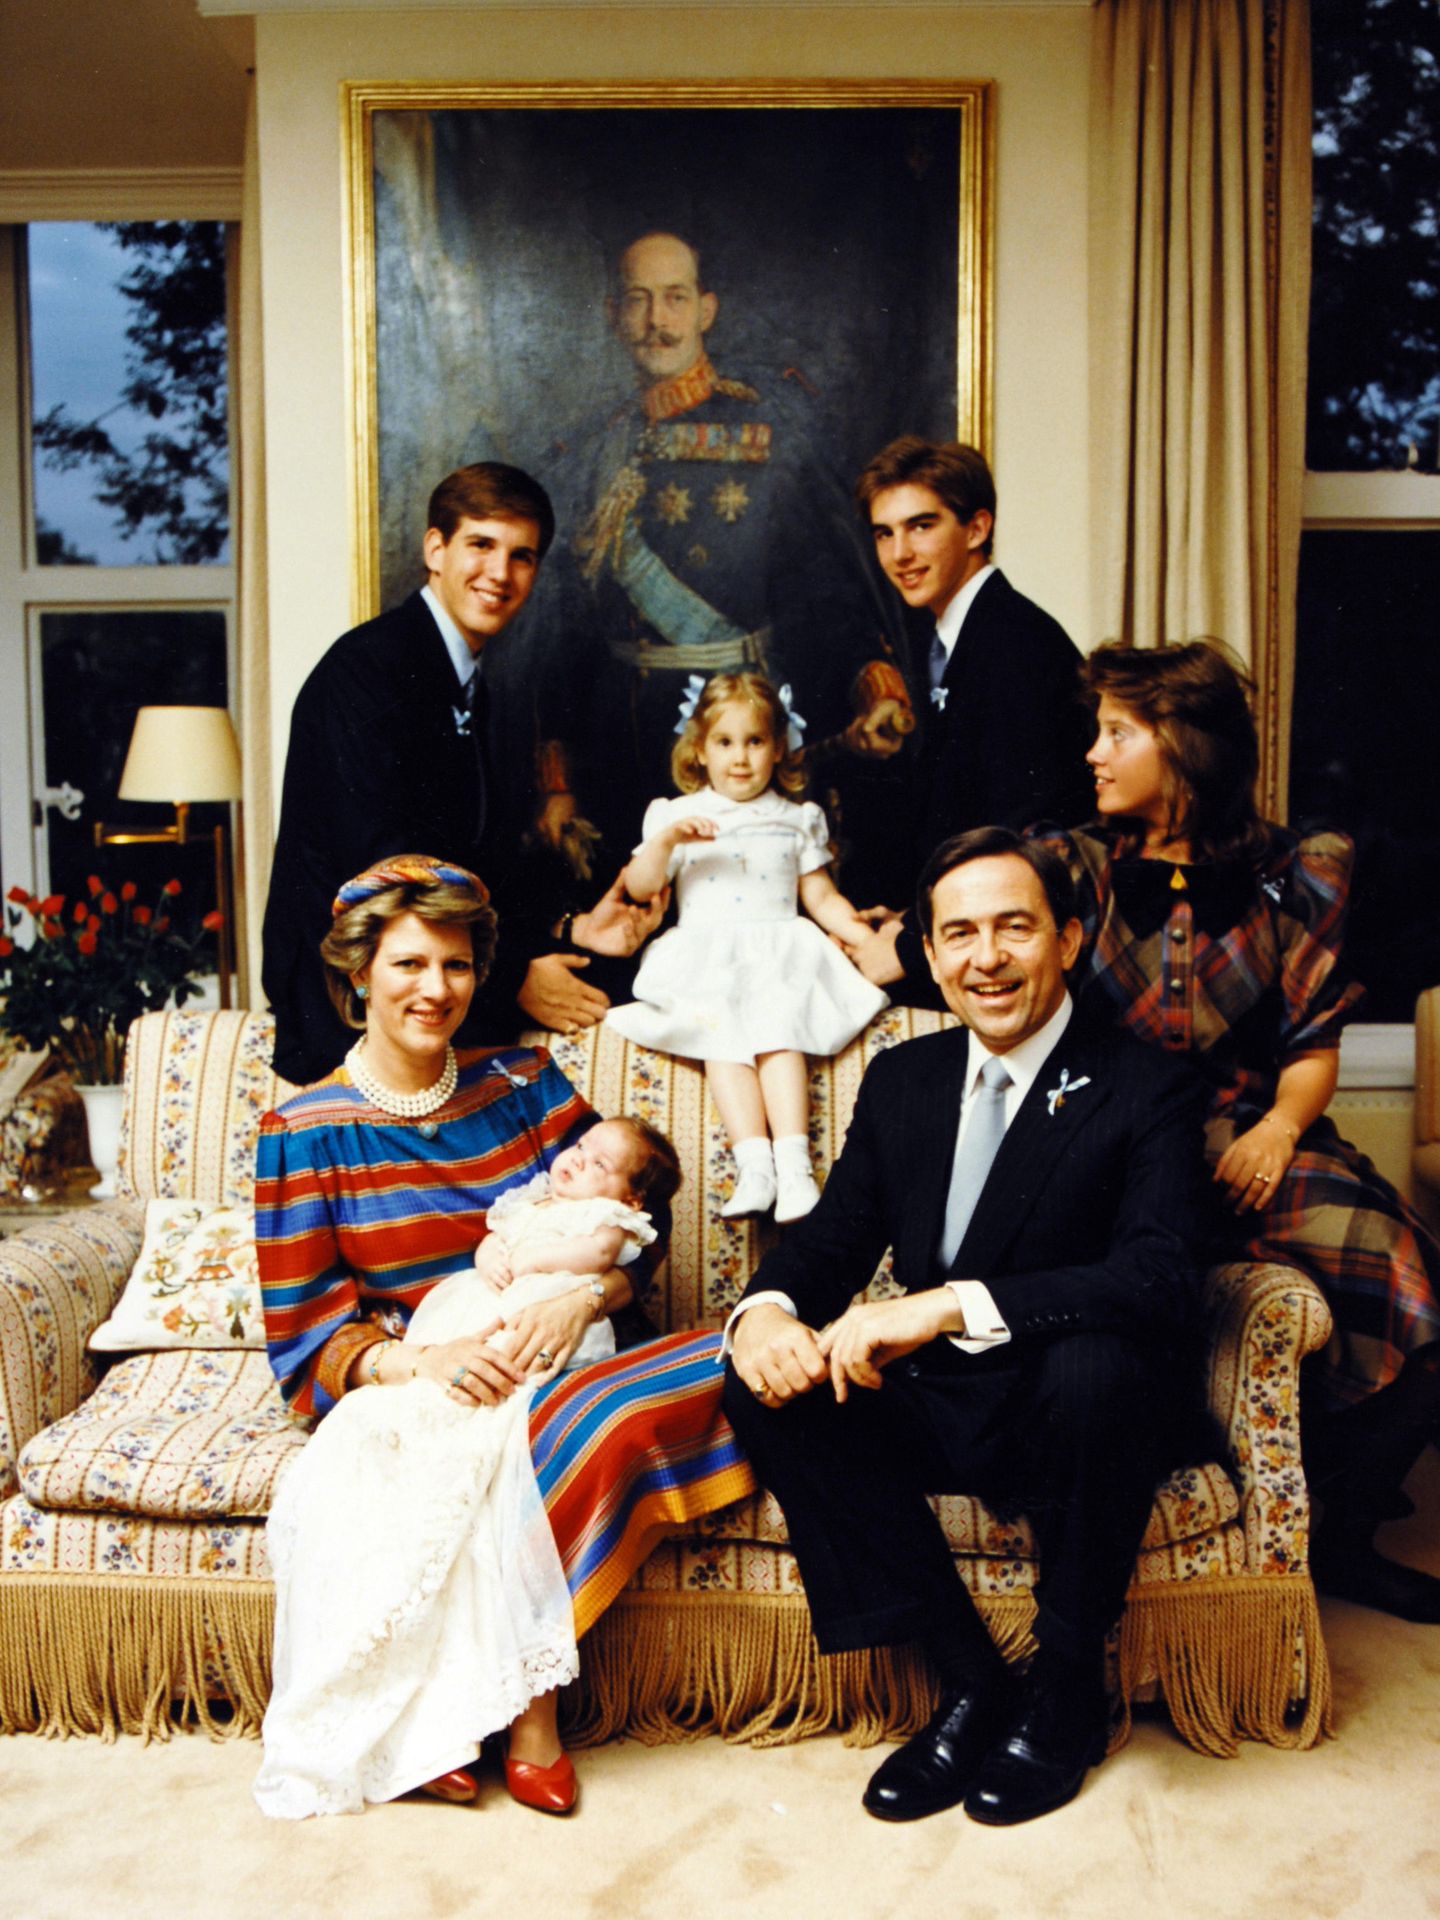 El rey Constantino de Grecia, con su esposa Ana María y sus hijos Alexia, Pablo, Nicolás, Teodora y Felipe.